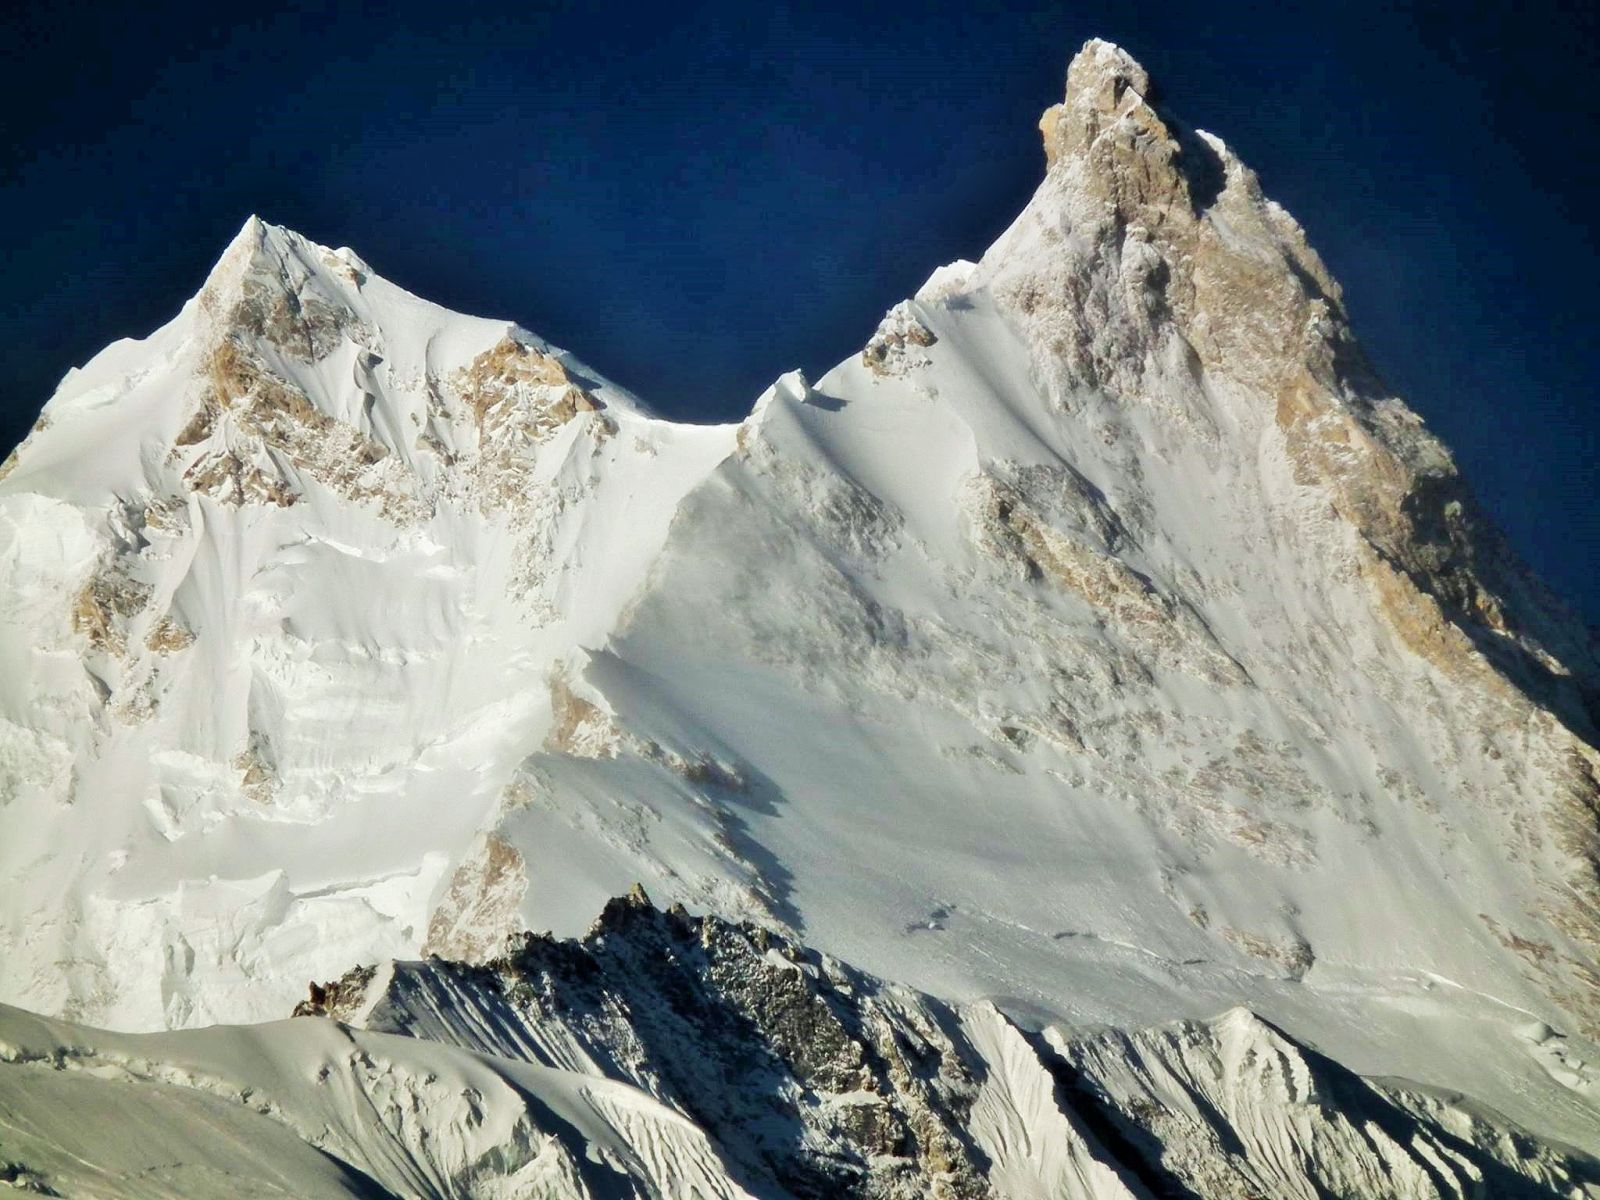 Summit Peaks of Mount Manaslu from the Buri Gandaki Valley